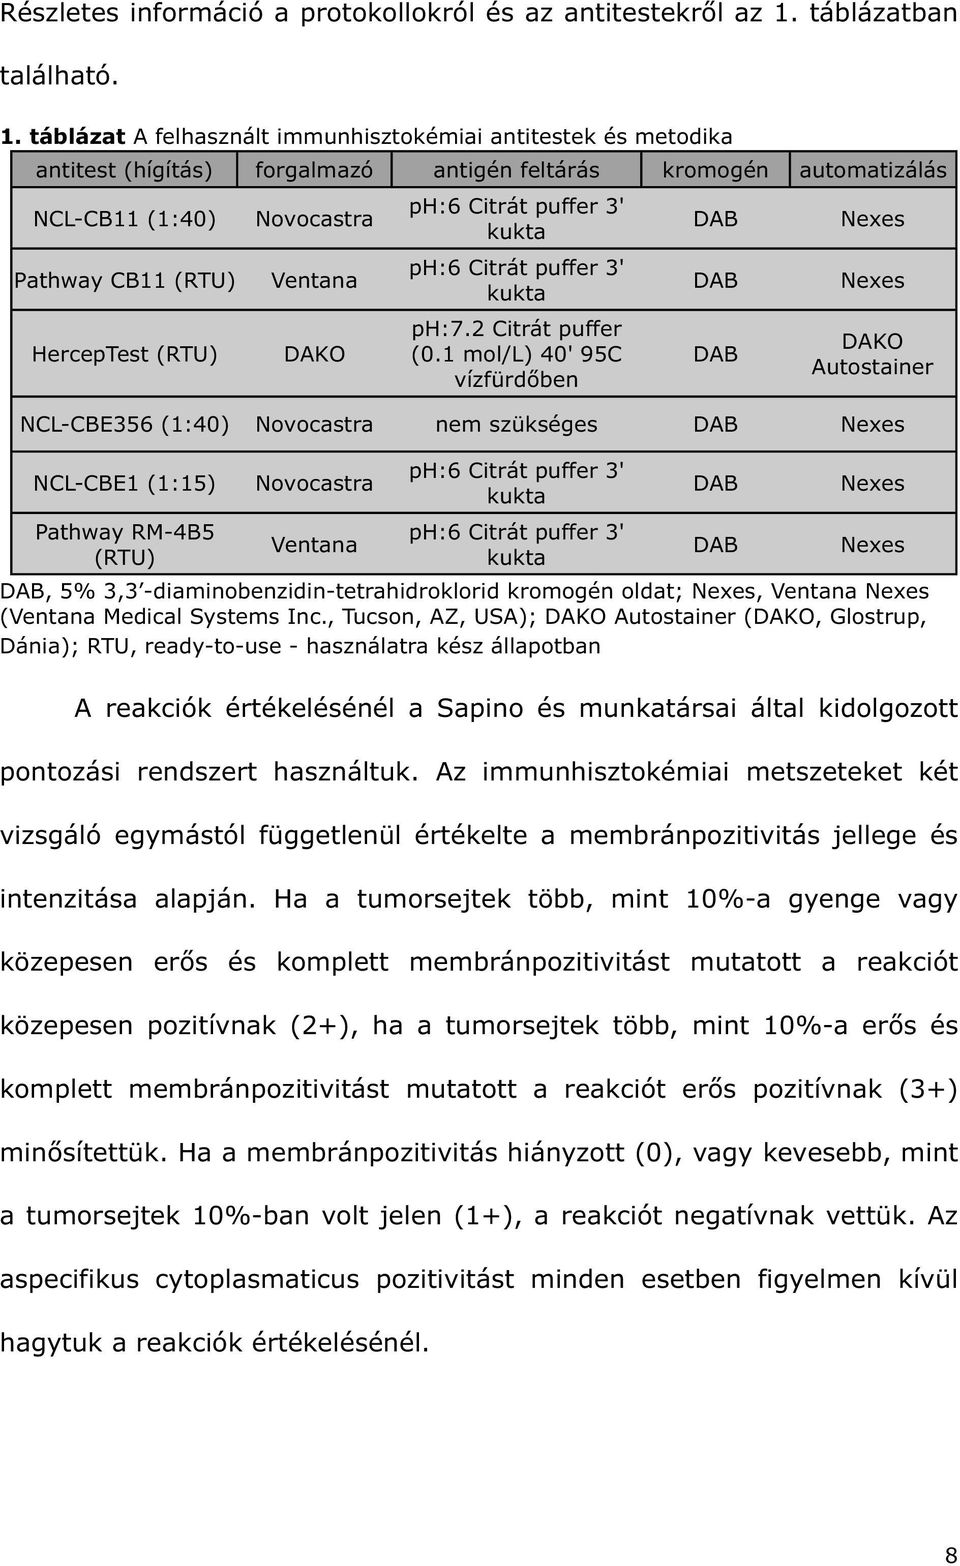 táblázat A felhasznált immunhisztokémiai antitestek és metodika antitest (hígítás) forgalmazó antigén feltárás kromogén automatizálás NCL-CB11 (1:40) Pathway CB11 (RTU) HercepTest (RTU) Novocastra